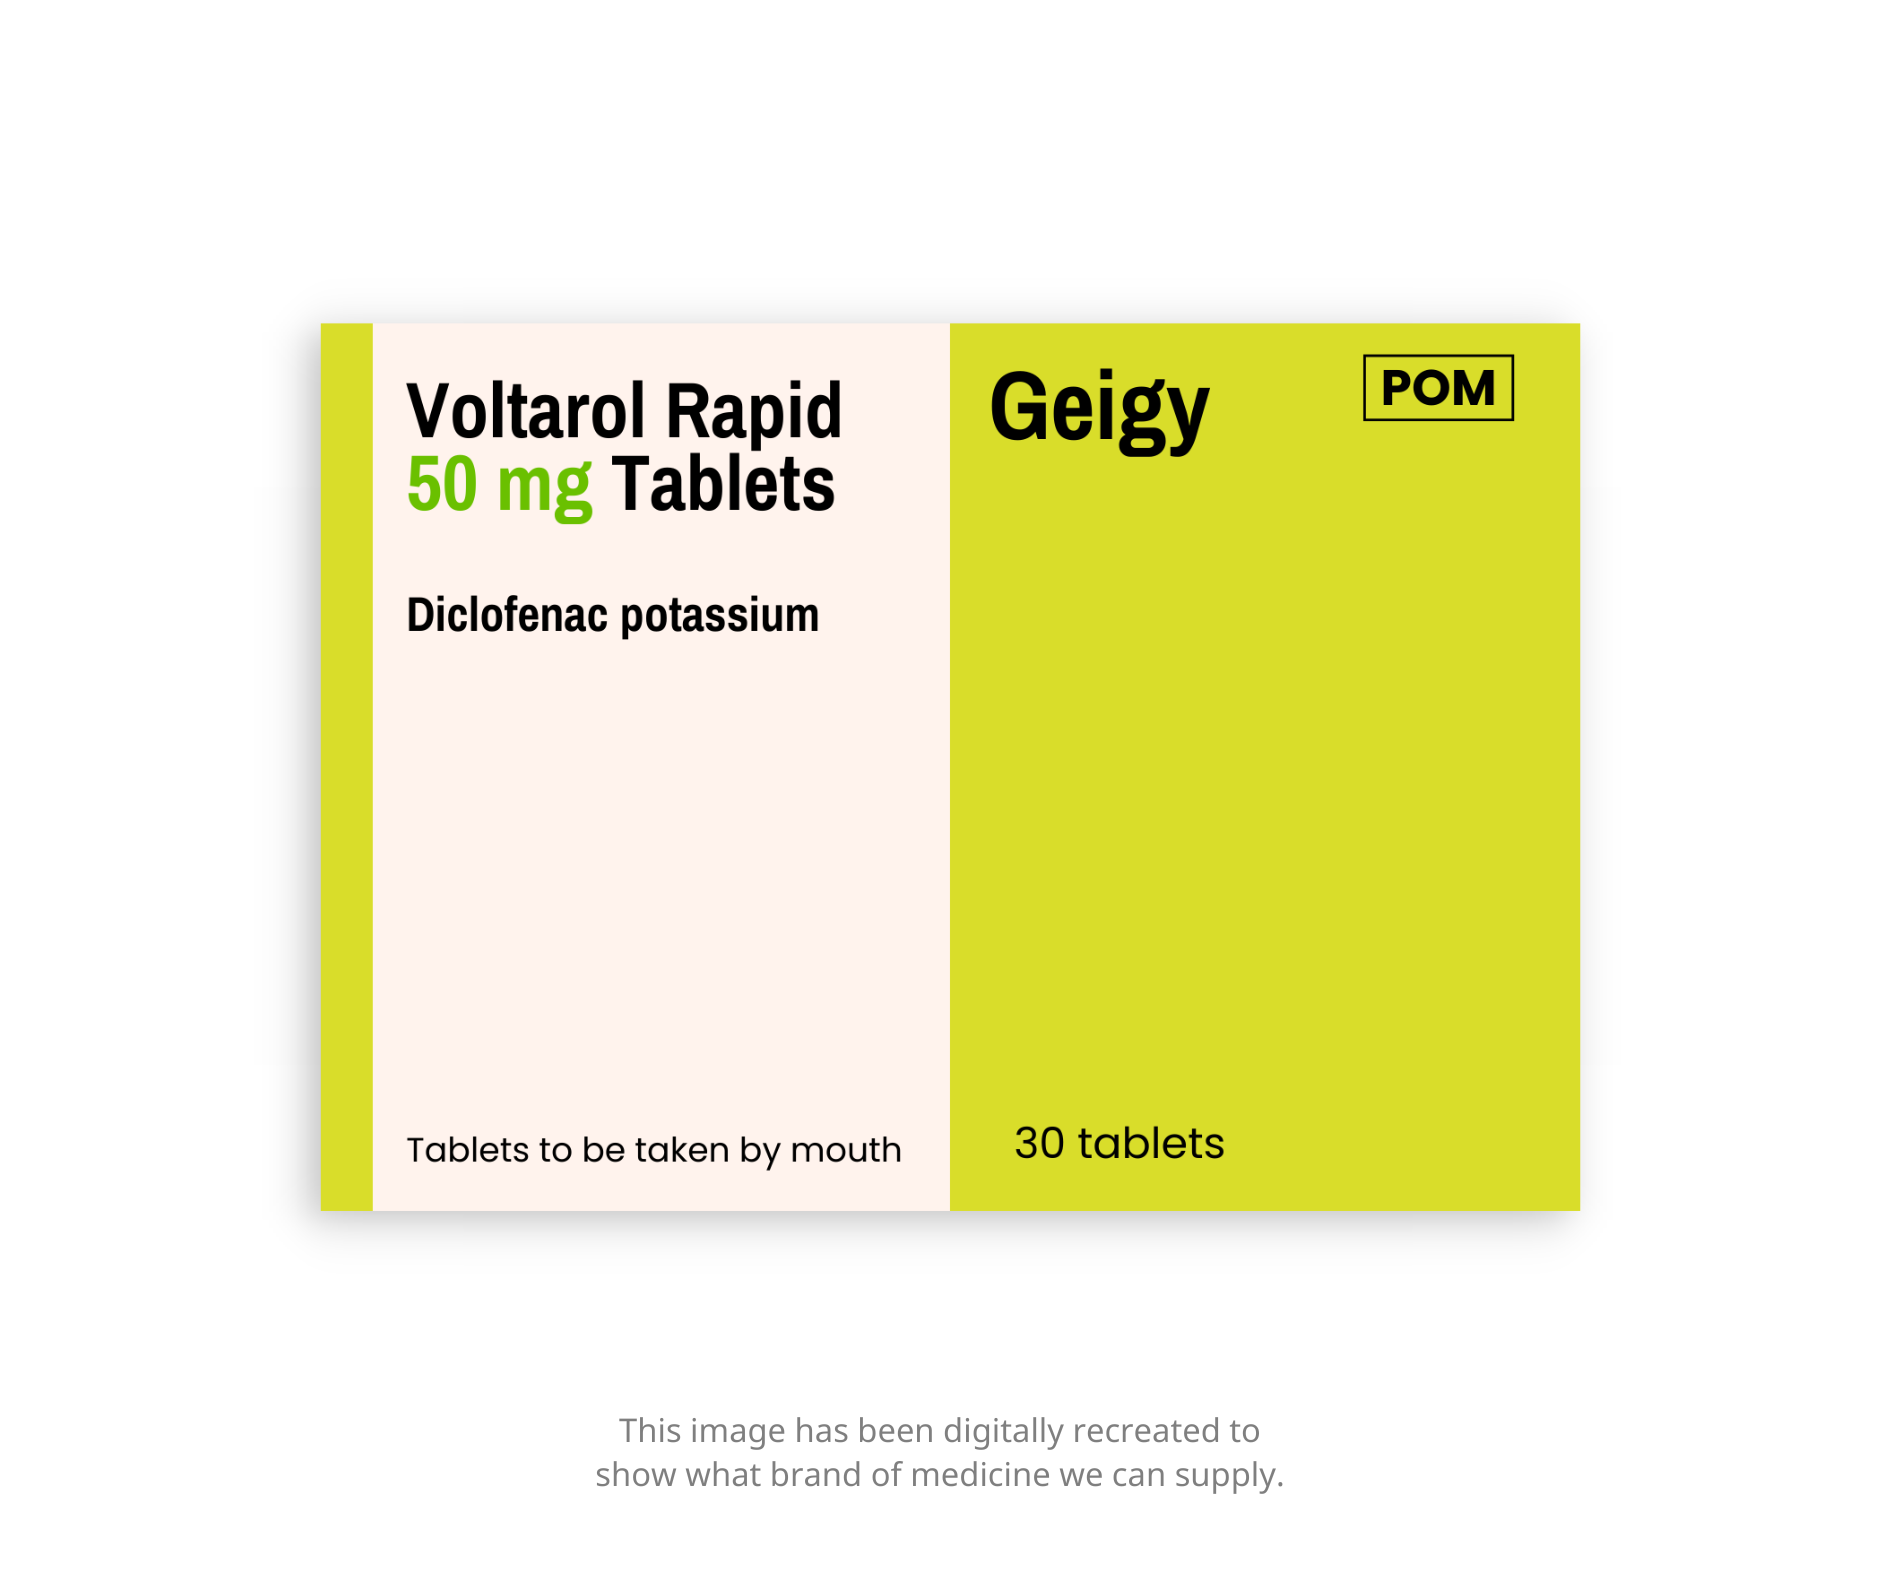 Voltarol rapid 50mg oral tablets - Diclofenac Potassium